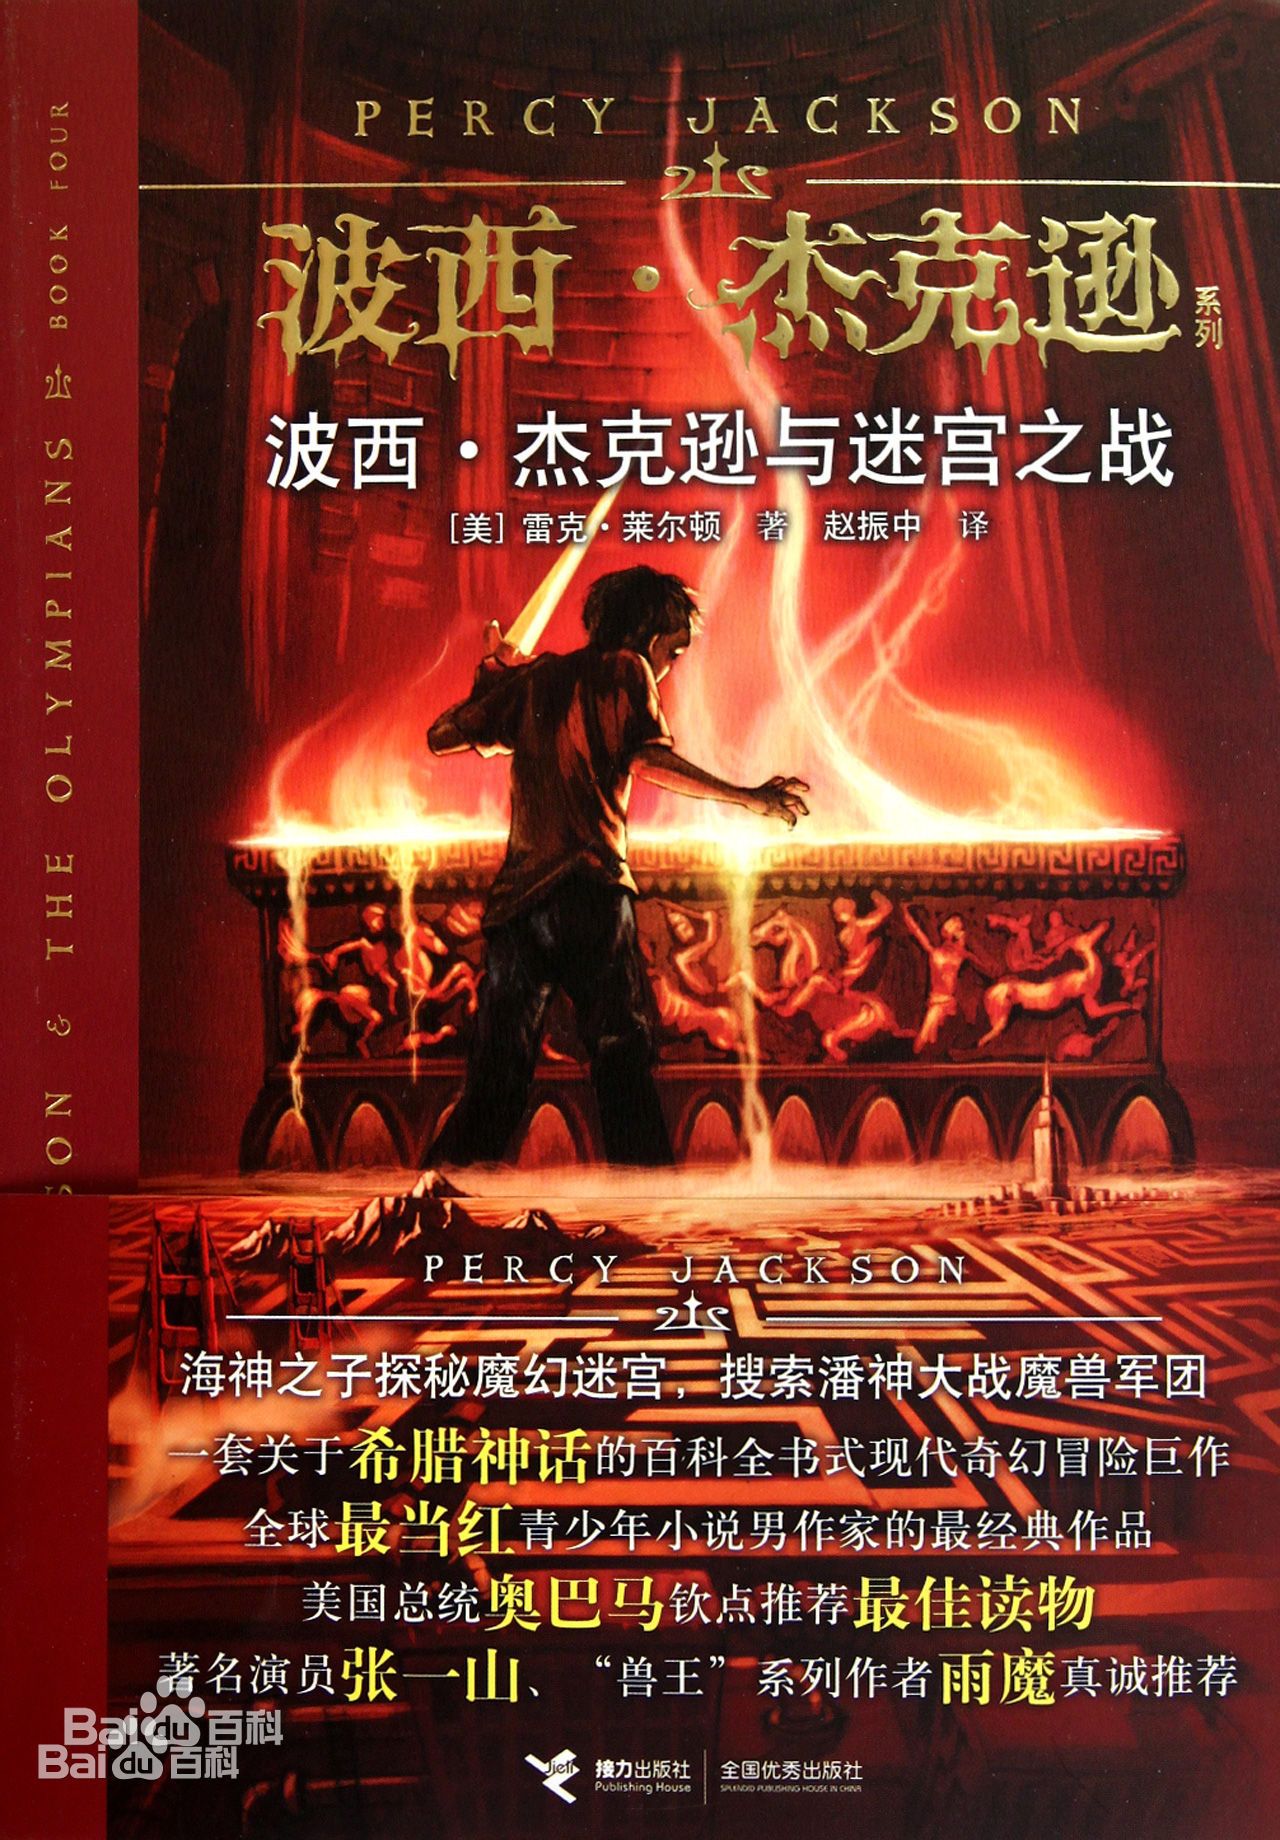 《波西·傑克遜與迷宮之戰》圖書封面